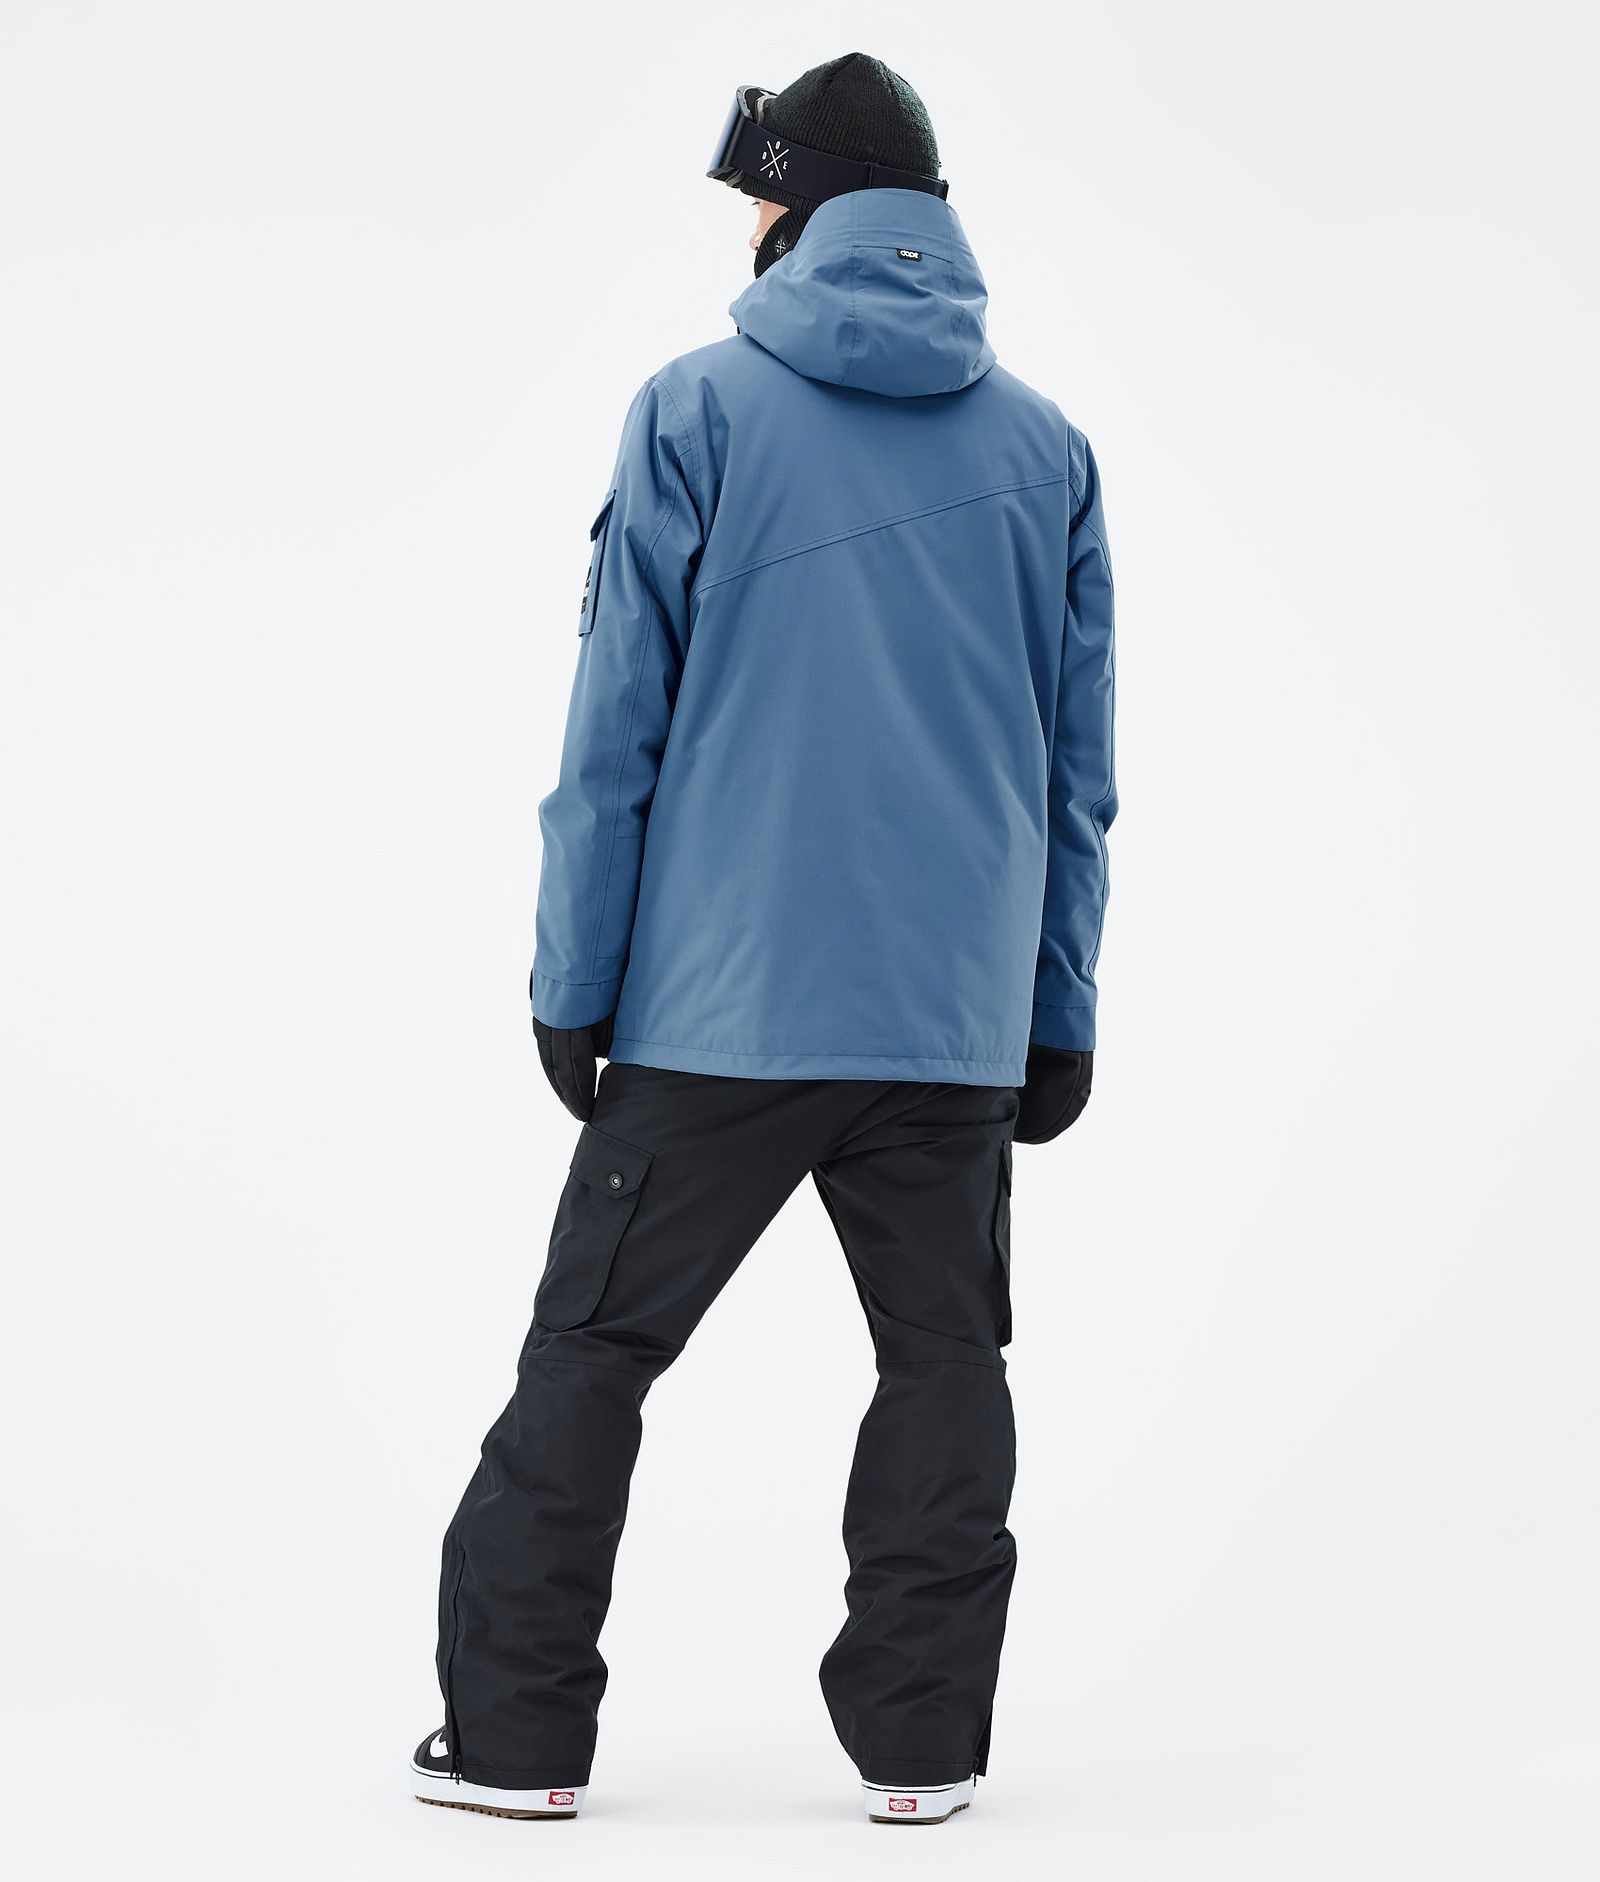 Adept Snowboardový Outfit Pánské Blue Steel/Blackout